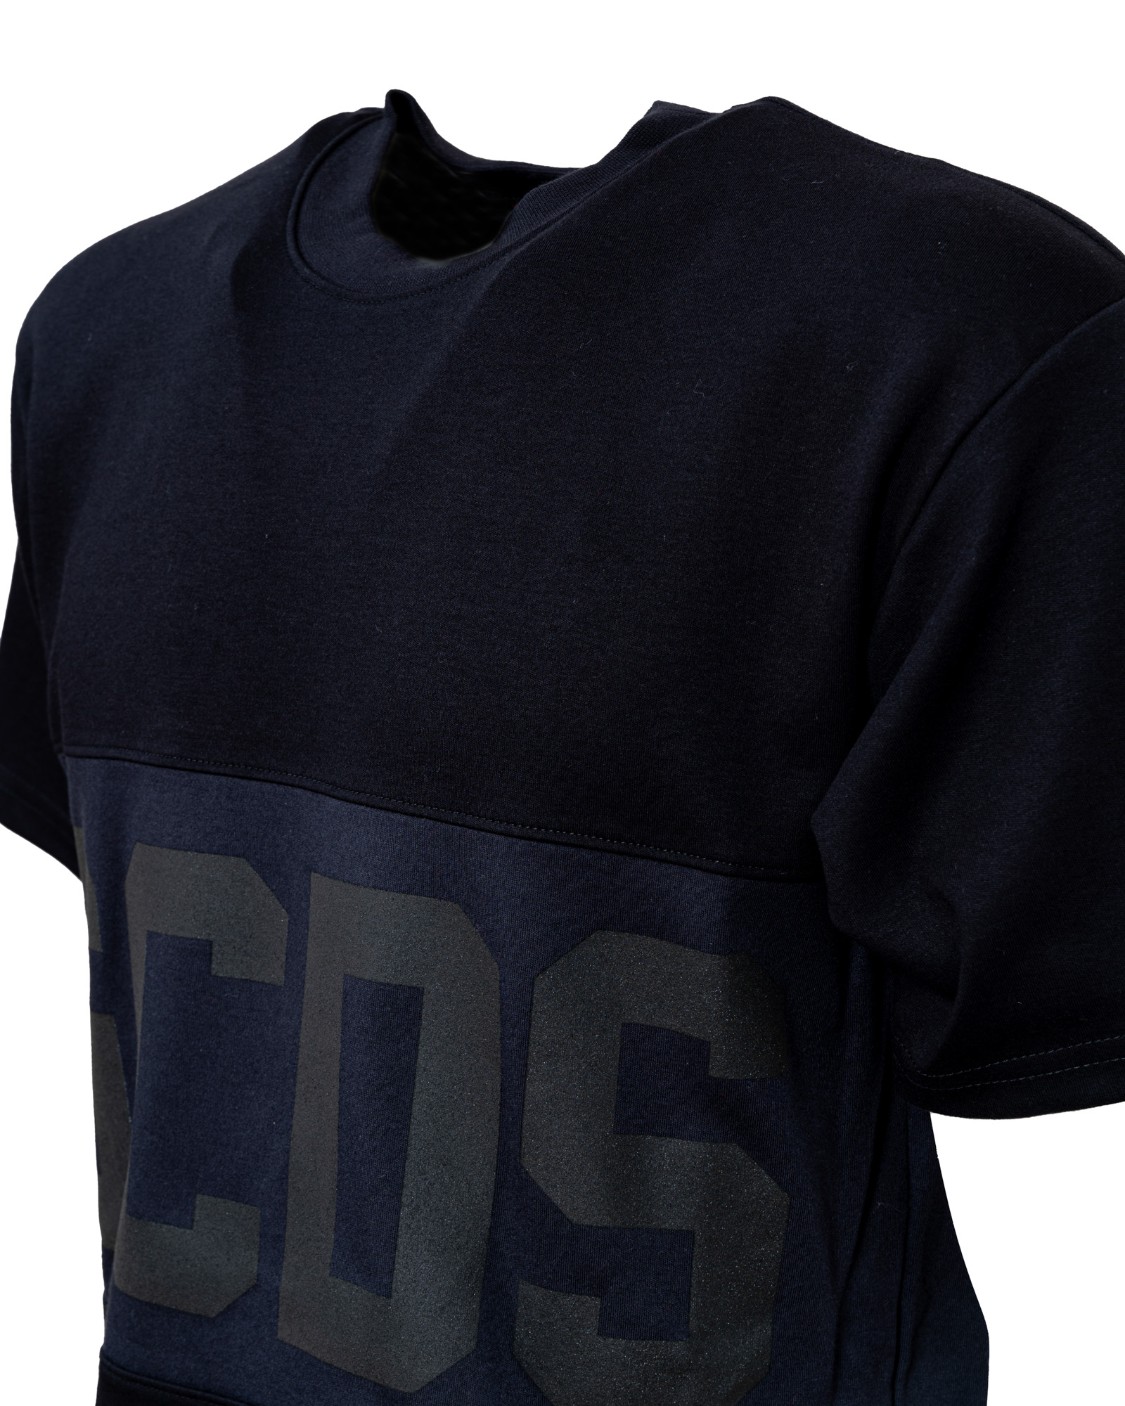 shop GCDS Saldi T-shirt: GCDS t-shirt nera con maxi logo, all around, tono su tono.
Maniche corte.
Scollo rotondo.
Vestibilità regolare.
Composizione: 100% cotone.
Made in Italia.. CC94M021501-02 number 6590082